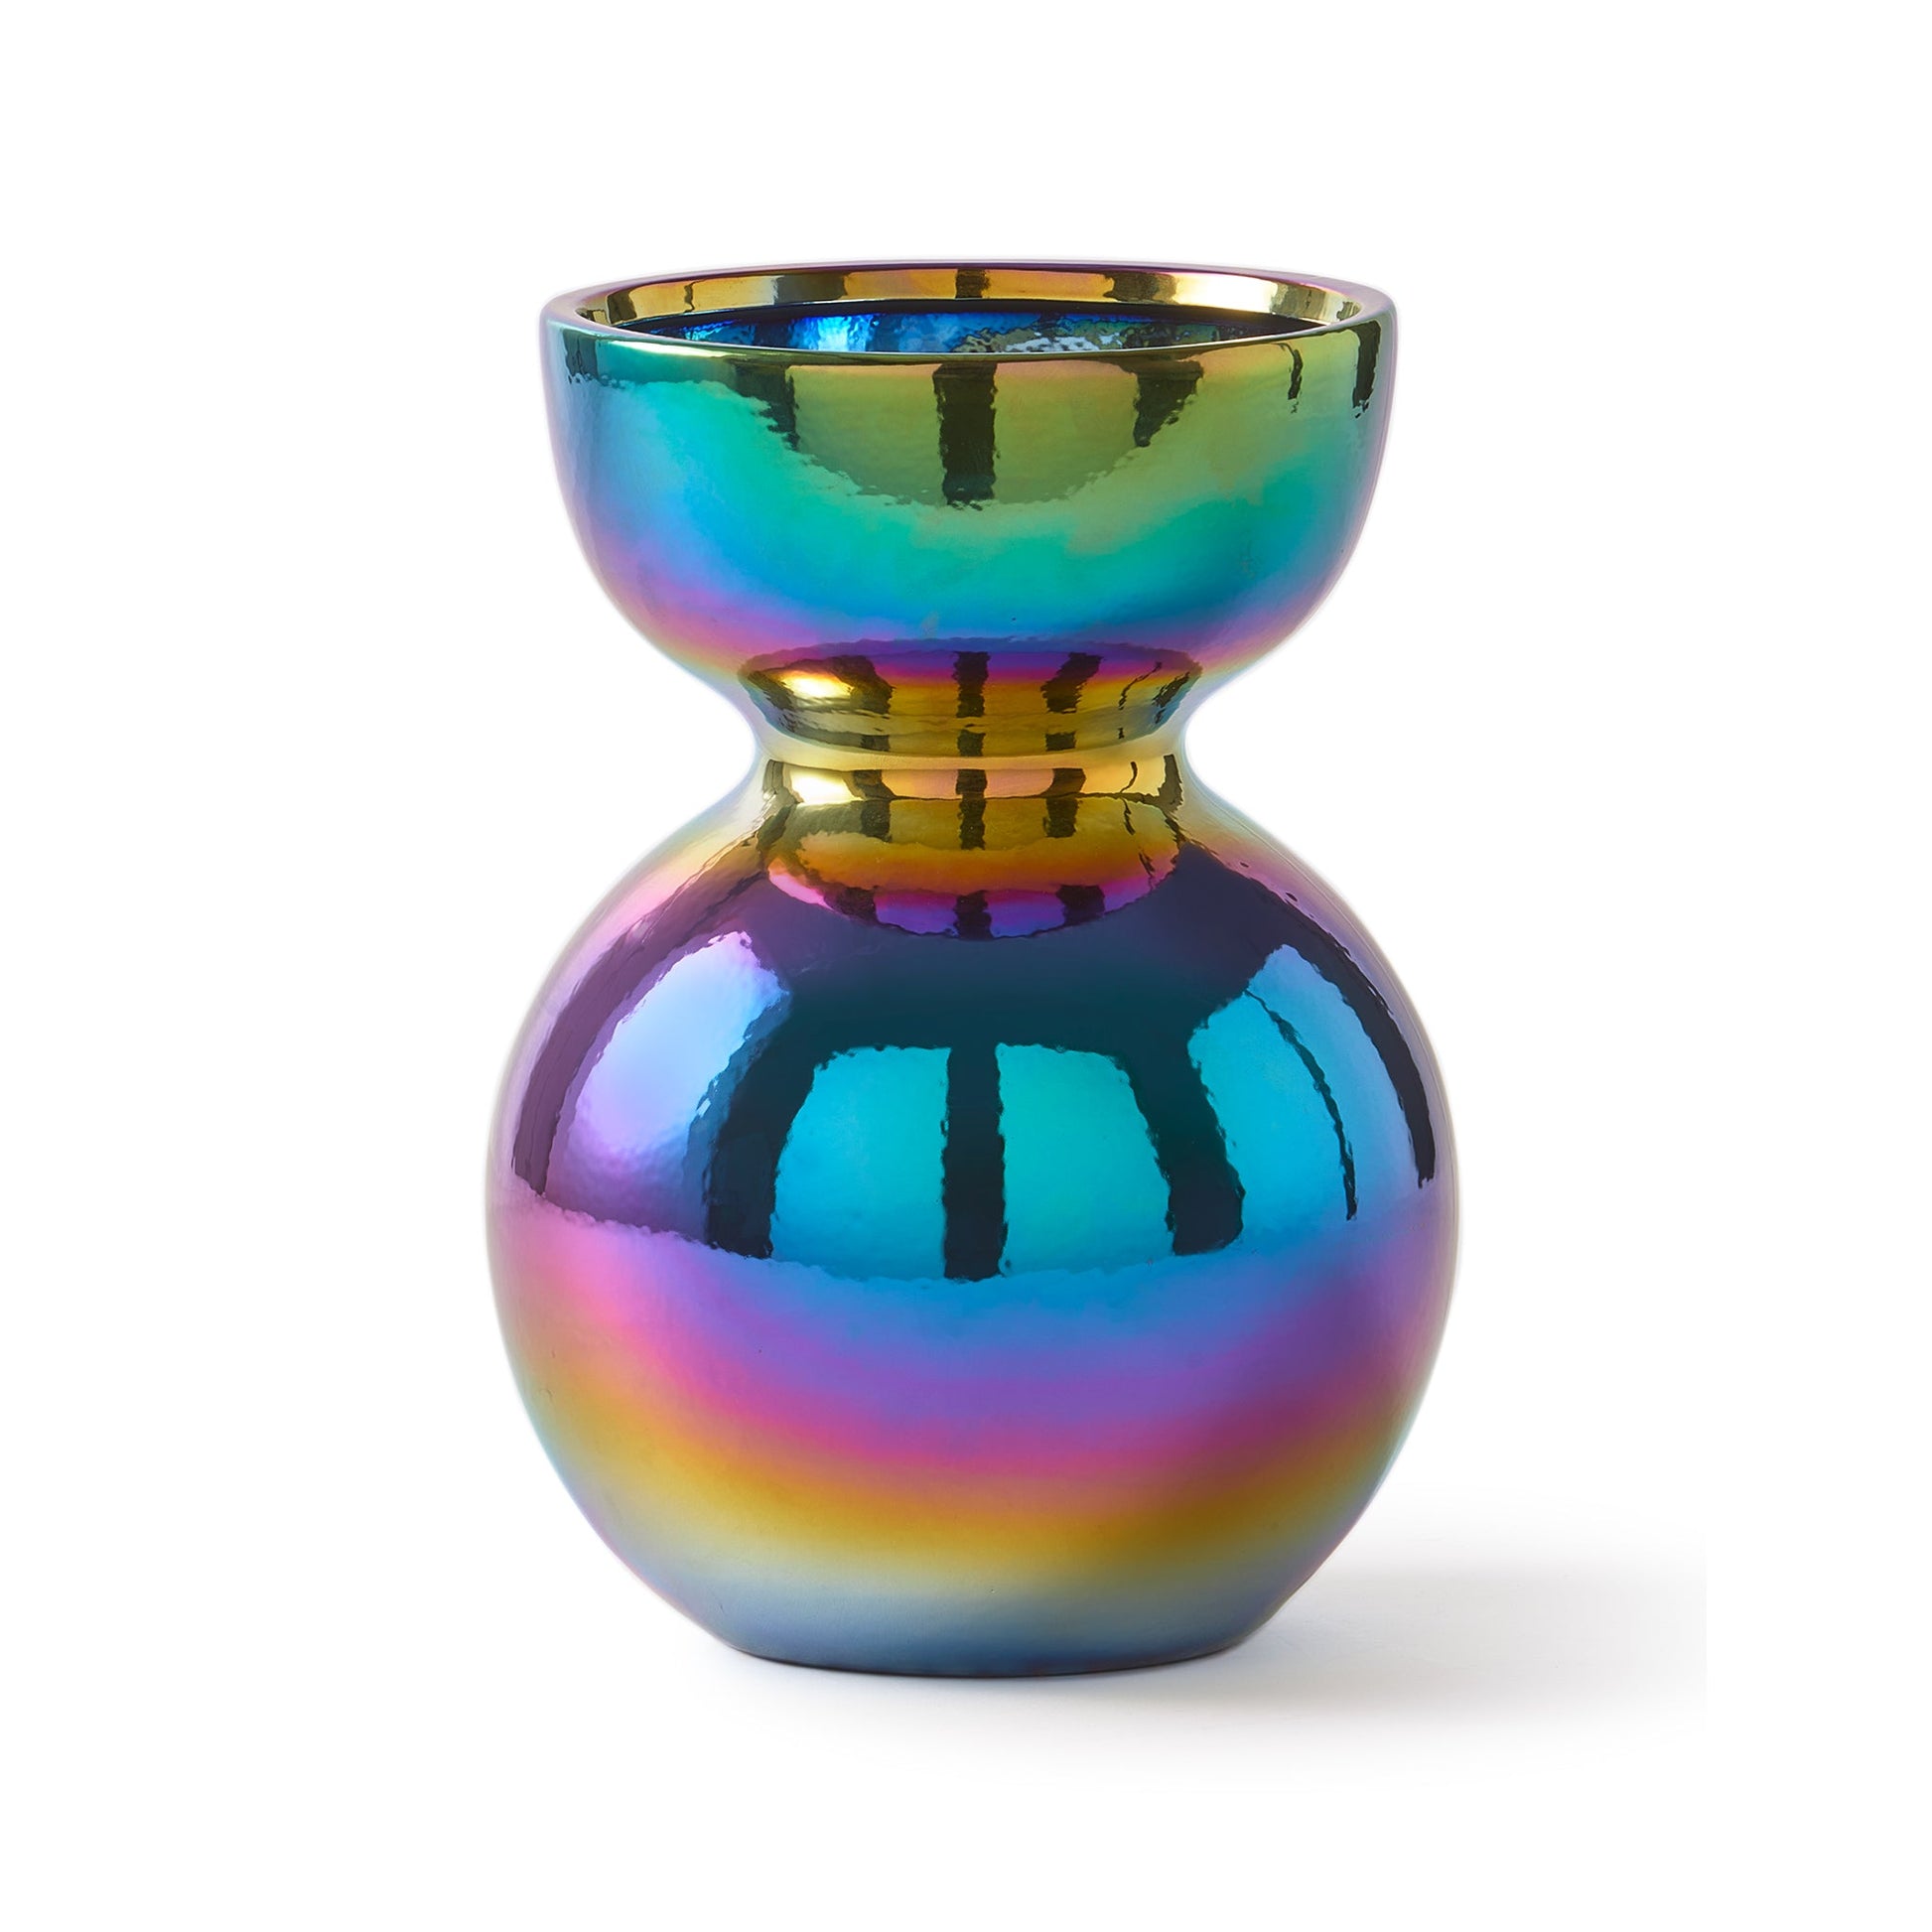 Runde Vase mit schimmernder Ölfilm-Optik - 32 cm hoch - Vandeley